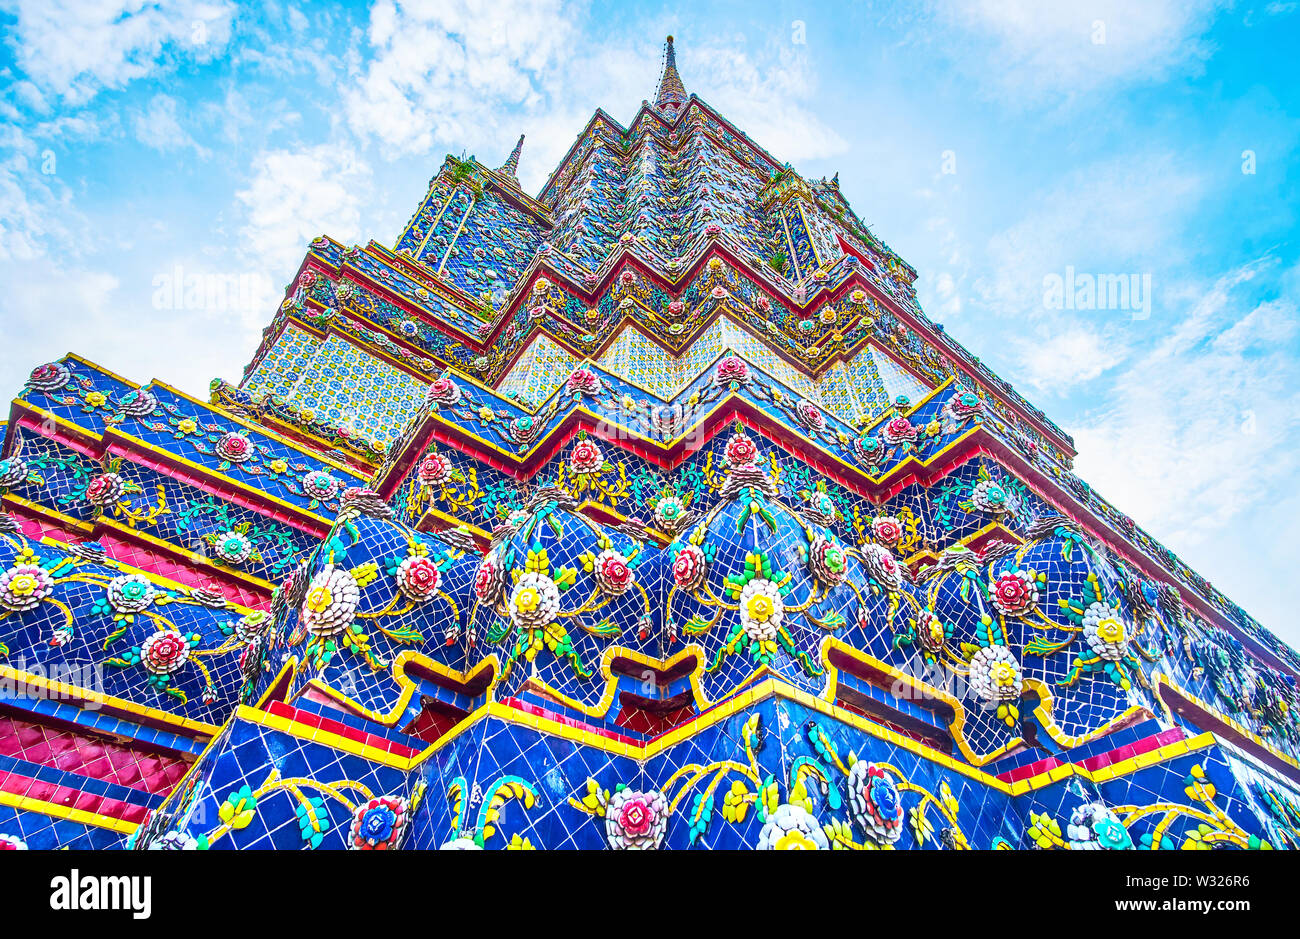 Thre hermosos coloridos azulejos chinos de la pagoda azul de Phra Maha Chedi santuario con estampados florales, complejo Wat Pho, en Bangkok, Tailandia Foto de stock